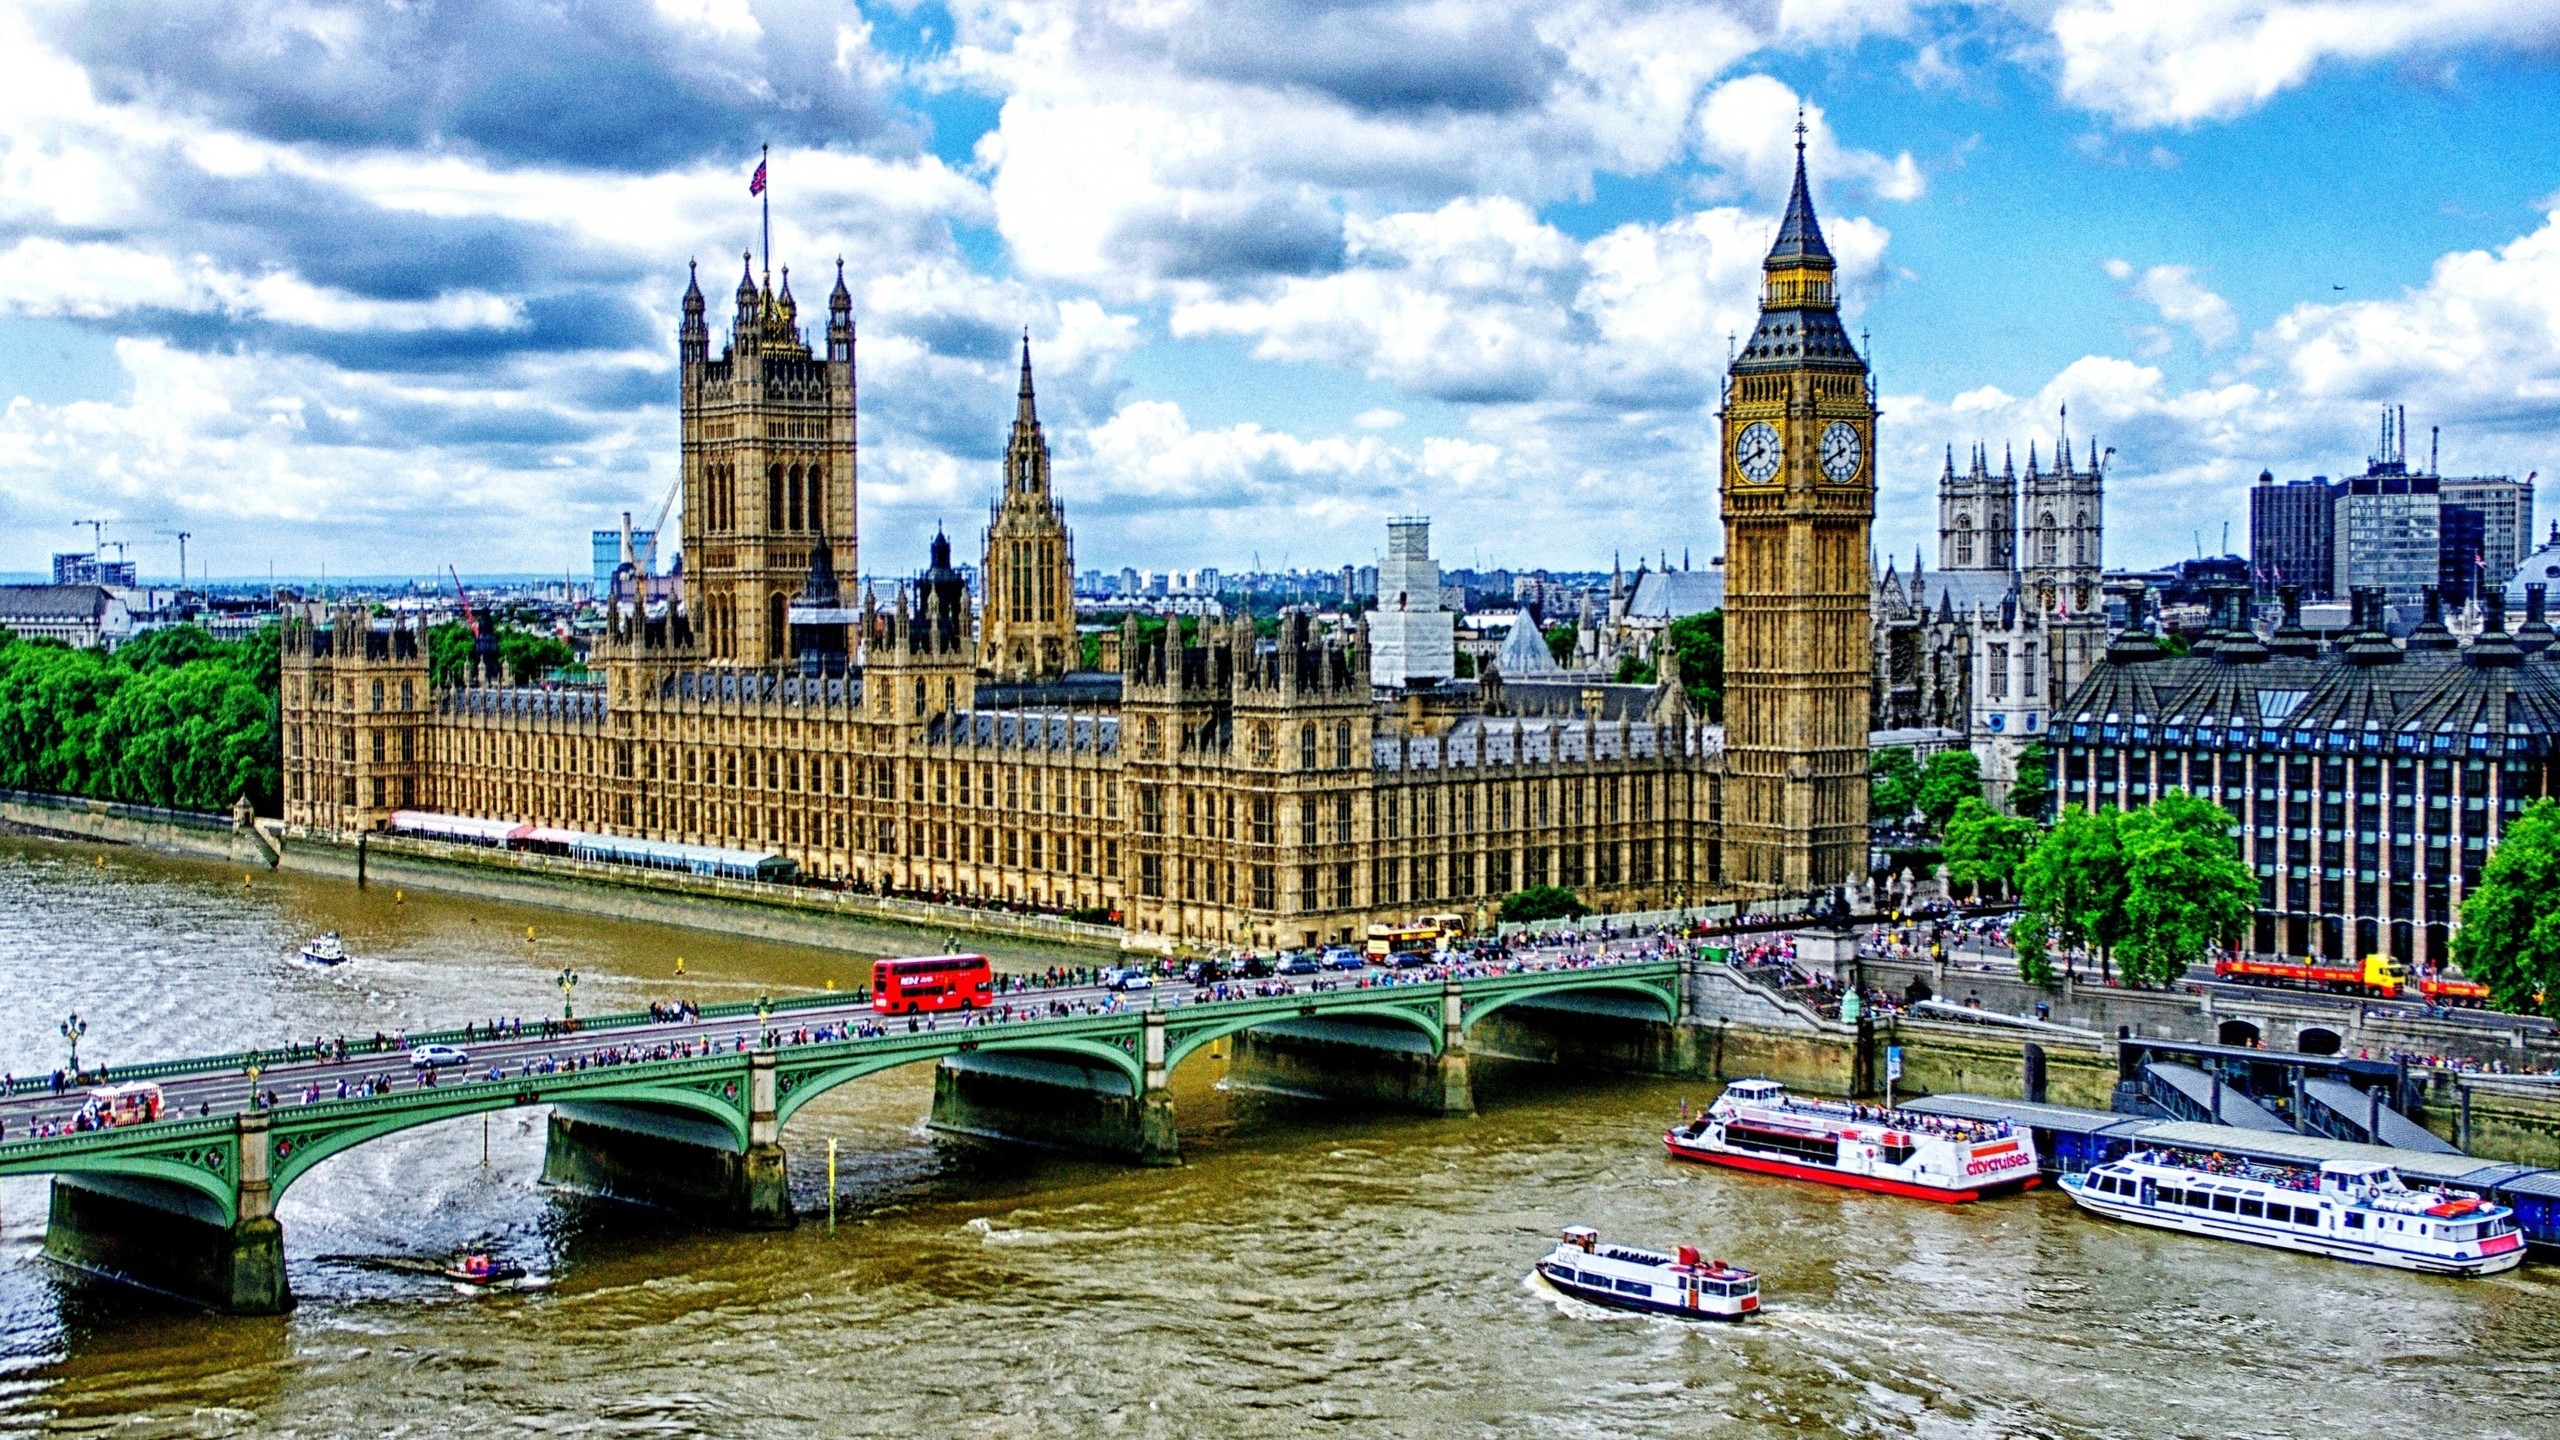 Westminster Bridge London for 2560x1440 HDTV resolution